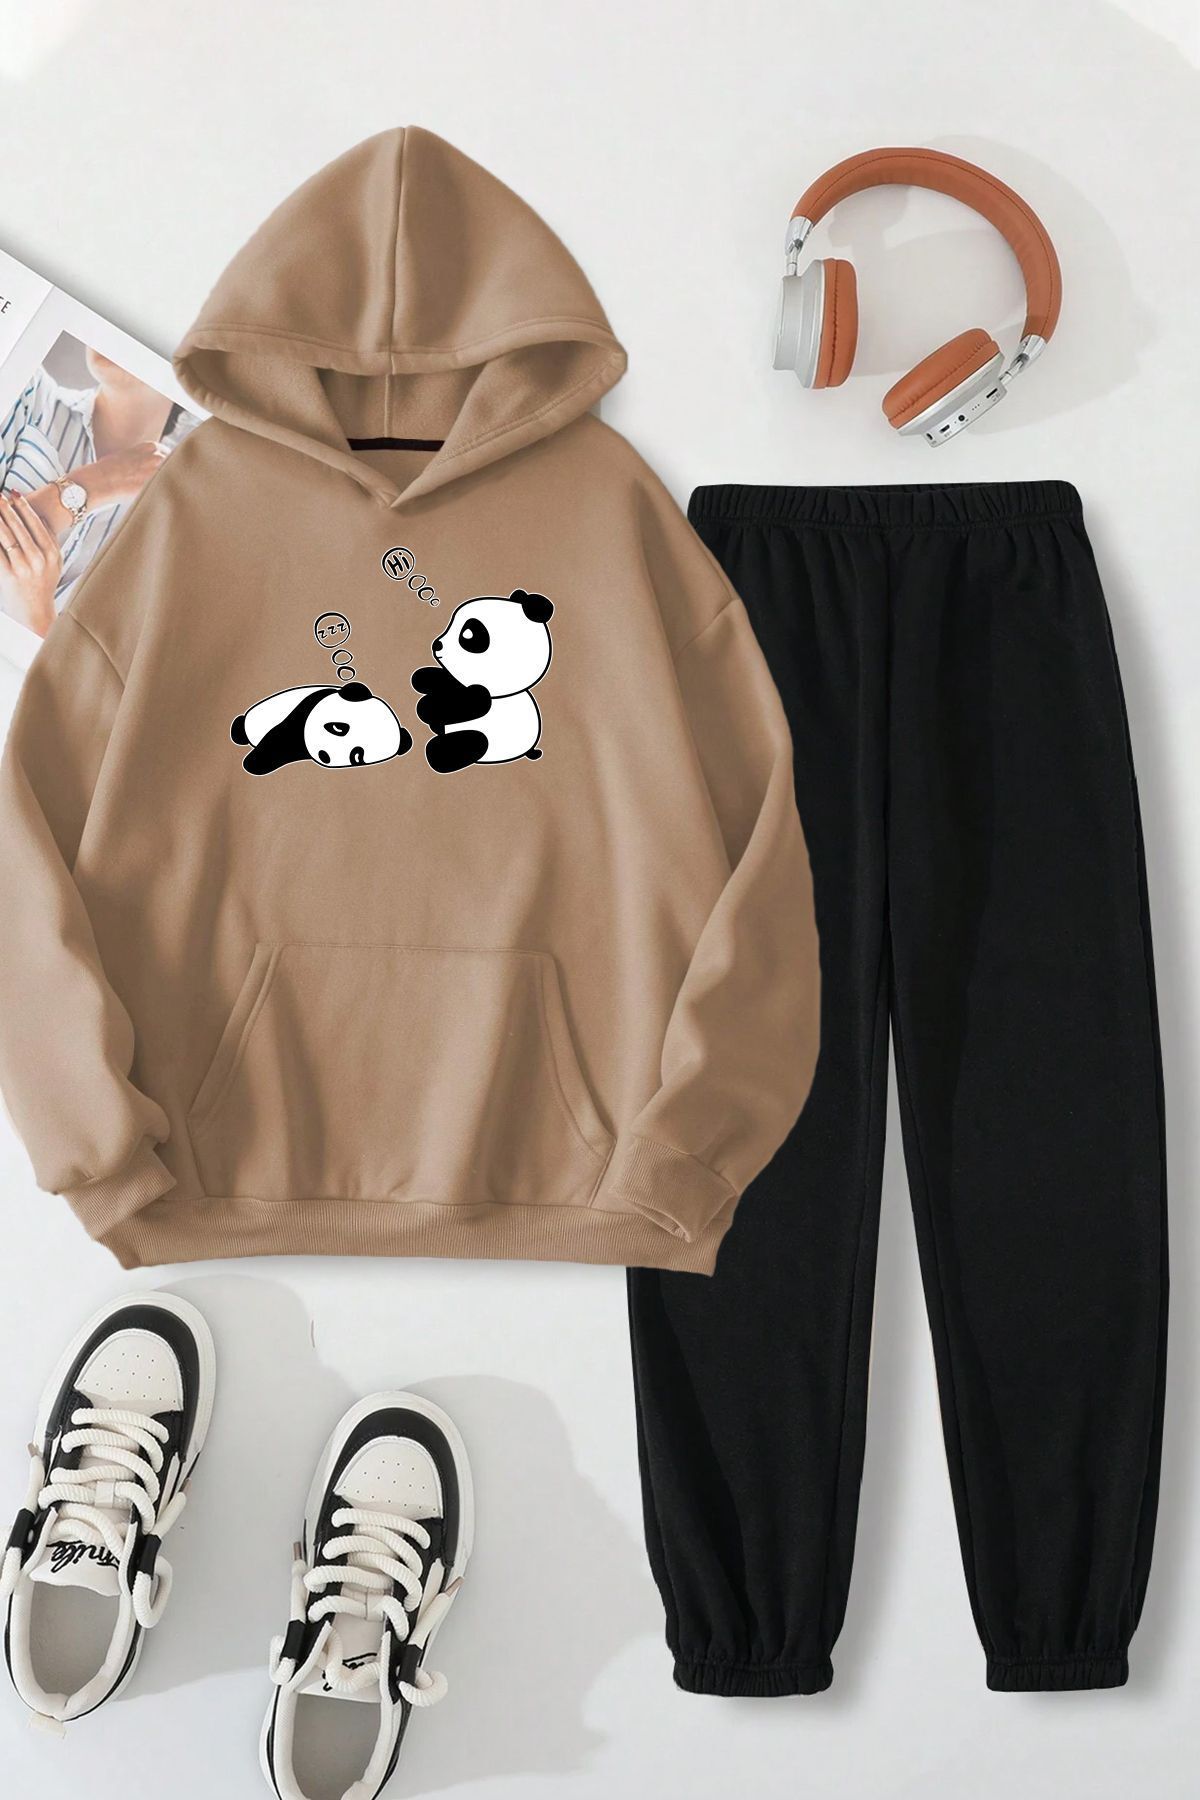 uyguntarz Unisex Uykucu Panda Baskılı Rahat Eşofman Takımı